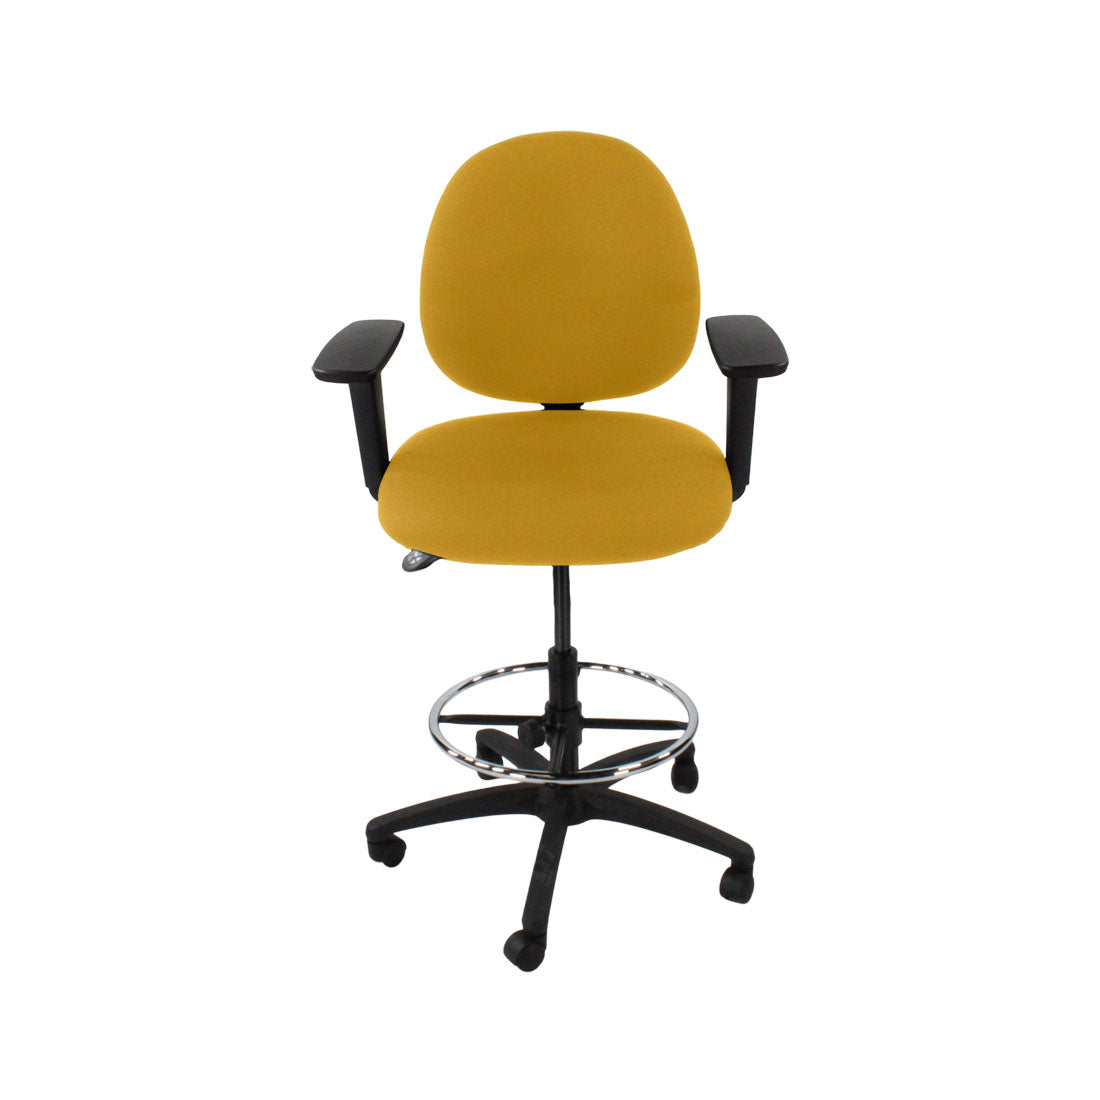 Inhaltsverzeichnis: Scoop Draftsman Chair aus gelbem Stoff – generalüberholt